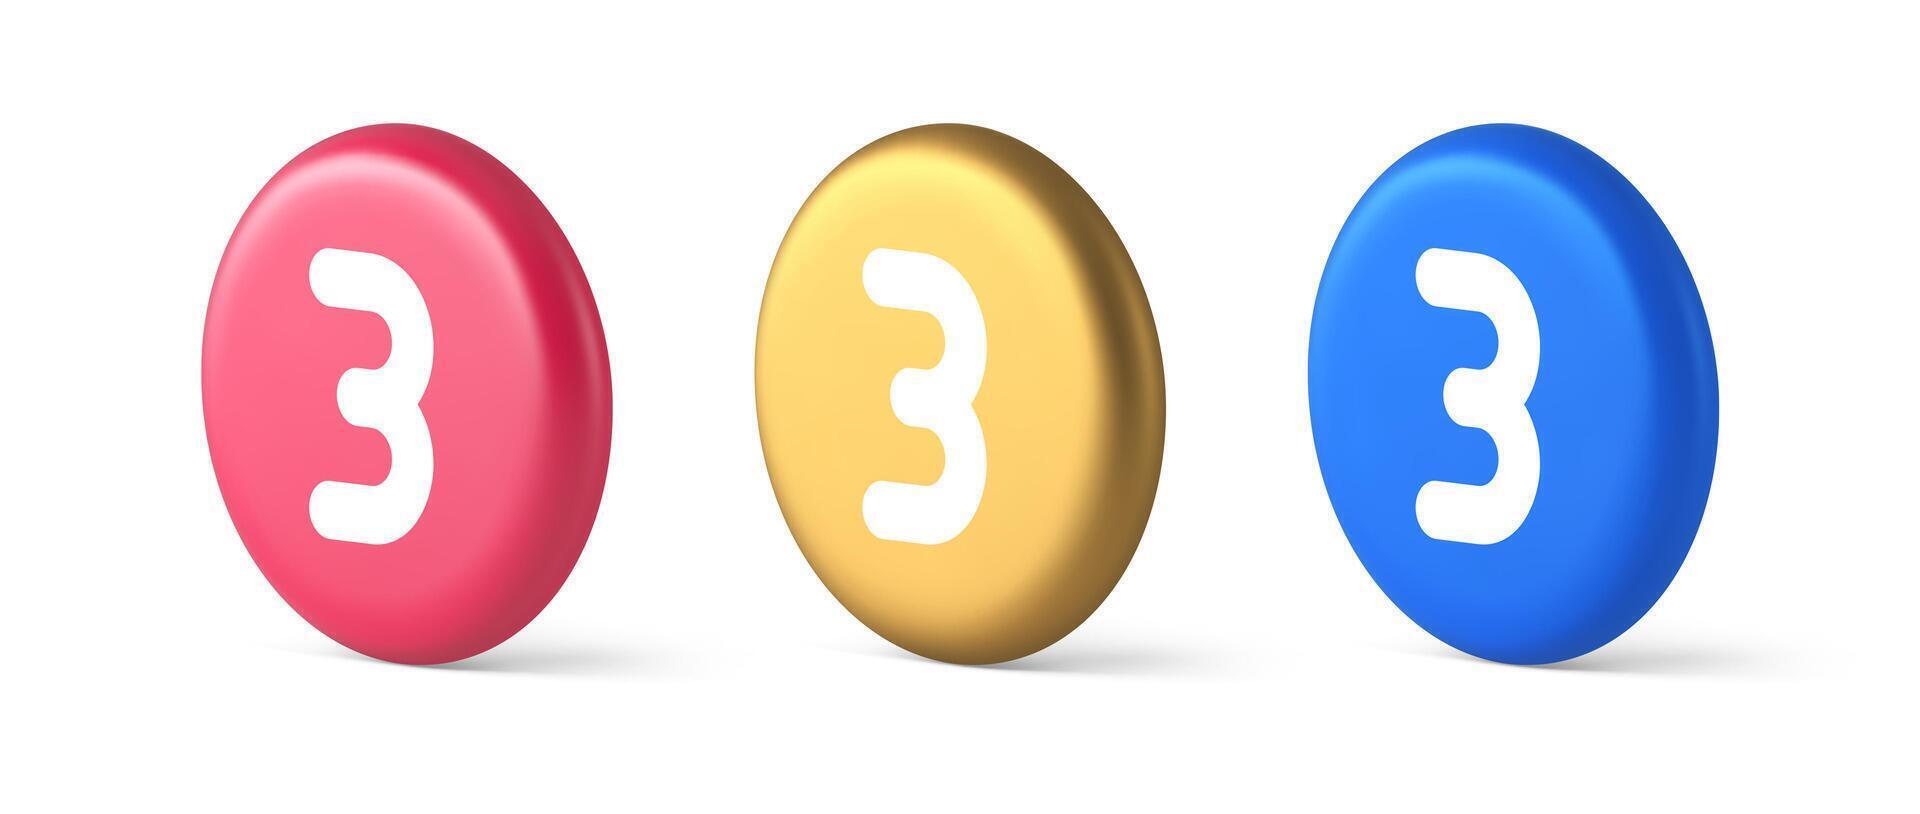 Tres número botón Internet comunicación mensajes de texto mensaje personaje 3d realista isométrica circulo icono vector